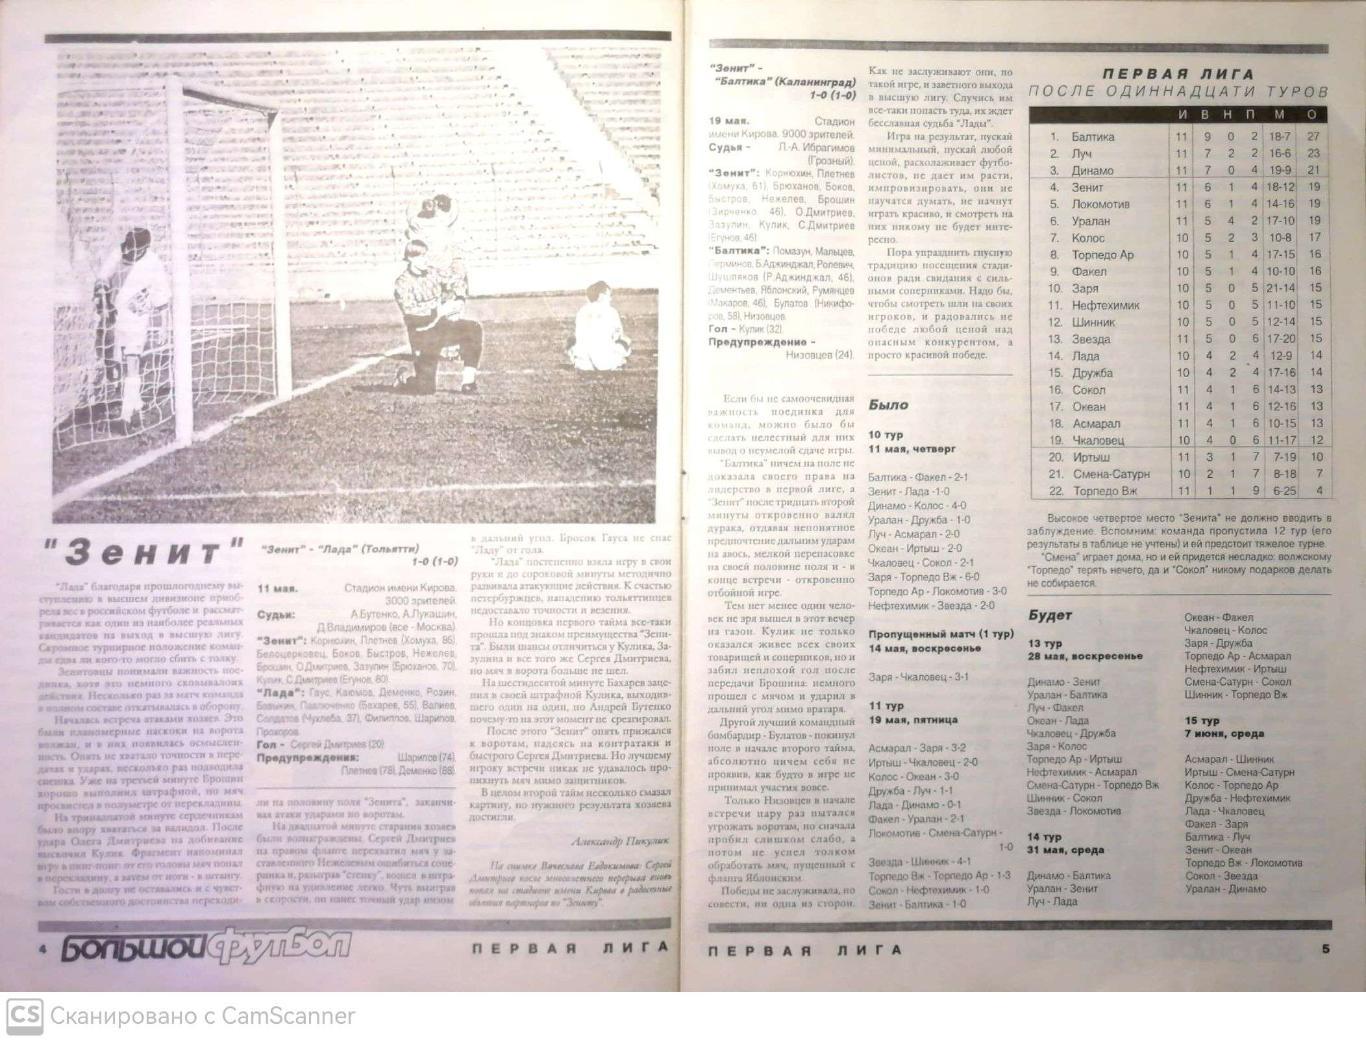 Журнал Большой футбол (Санкт-Петербург) 1995, #2 (24 мая) 1